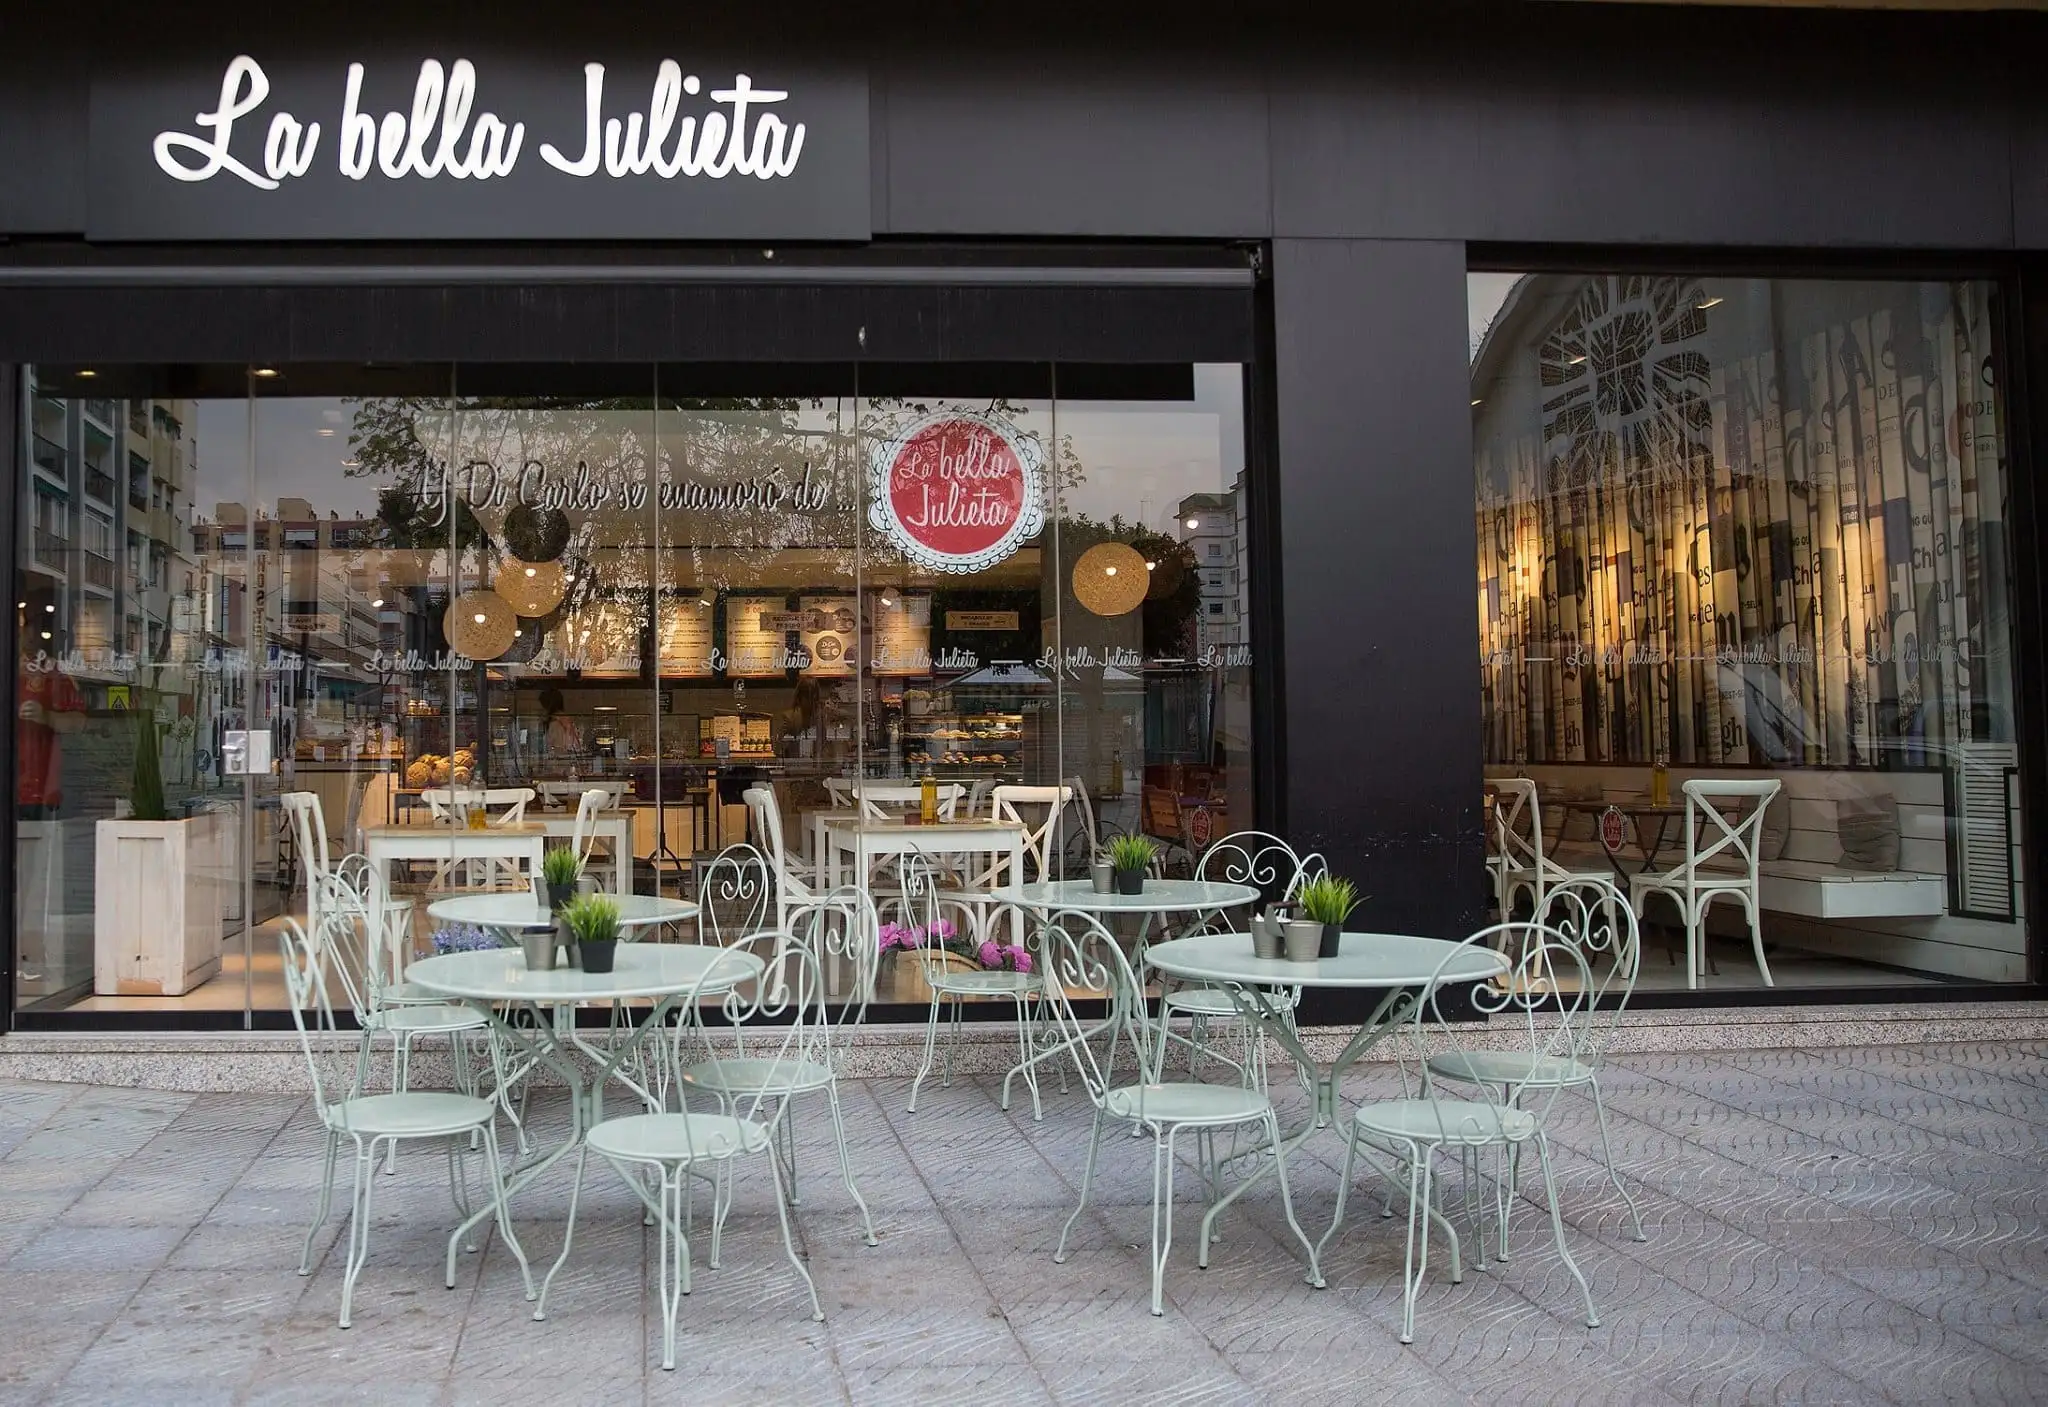 Ontbijt bij La Bella Julieta